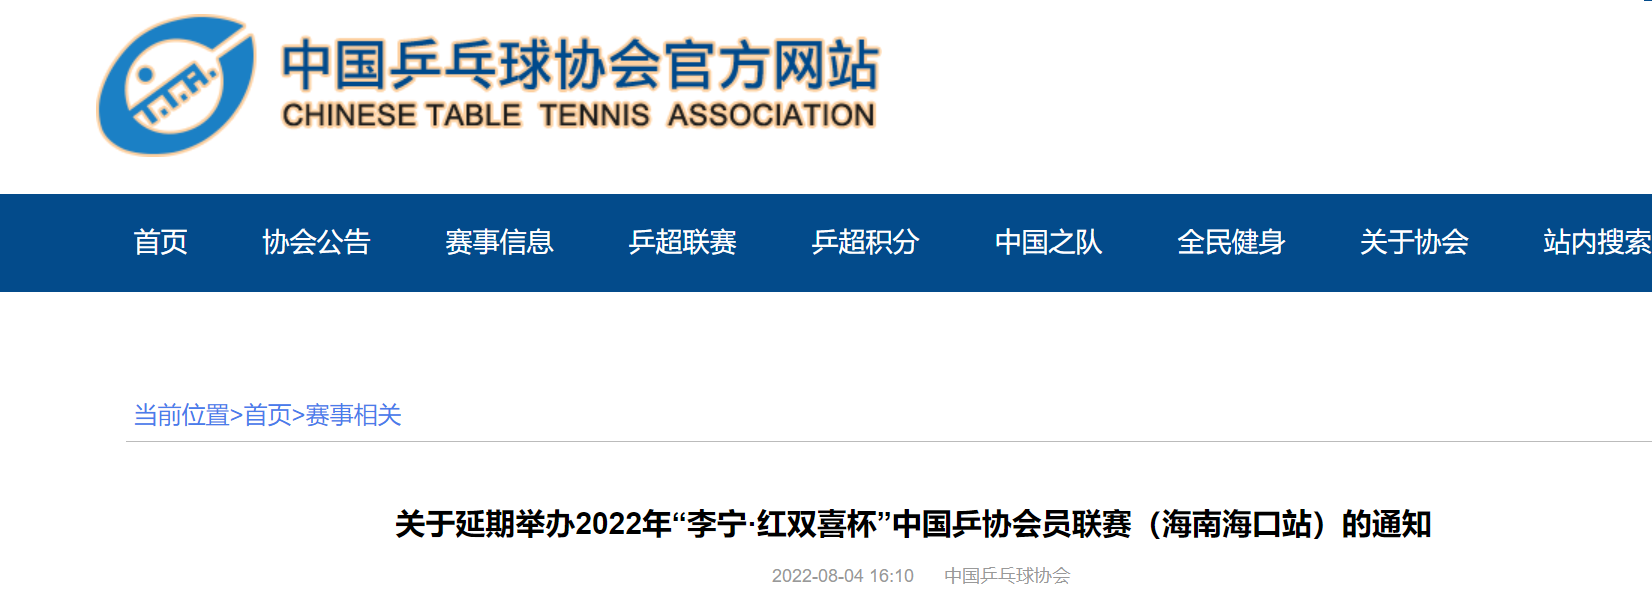 2022年“李宁·红双喜杯”中国乒协会员联赛海口站延期举办